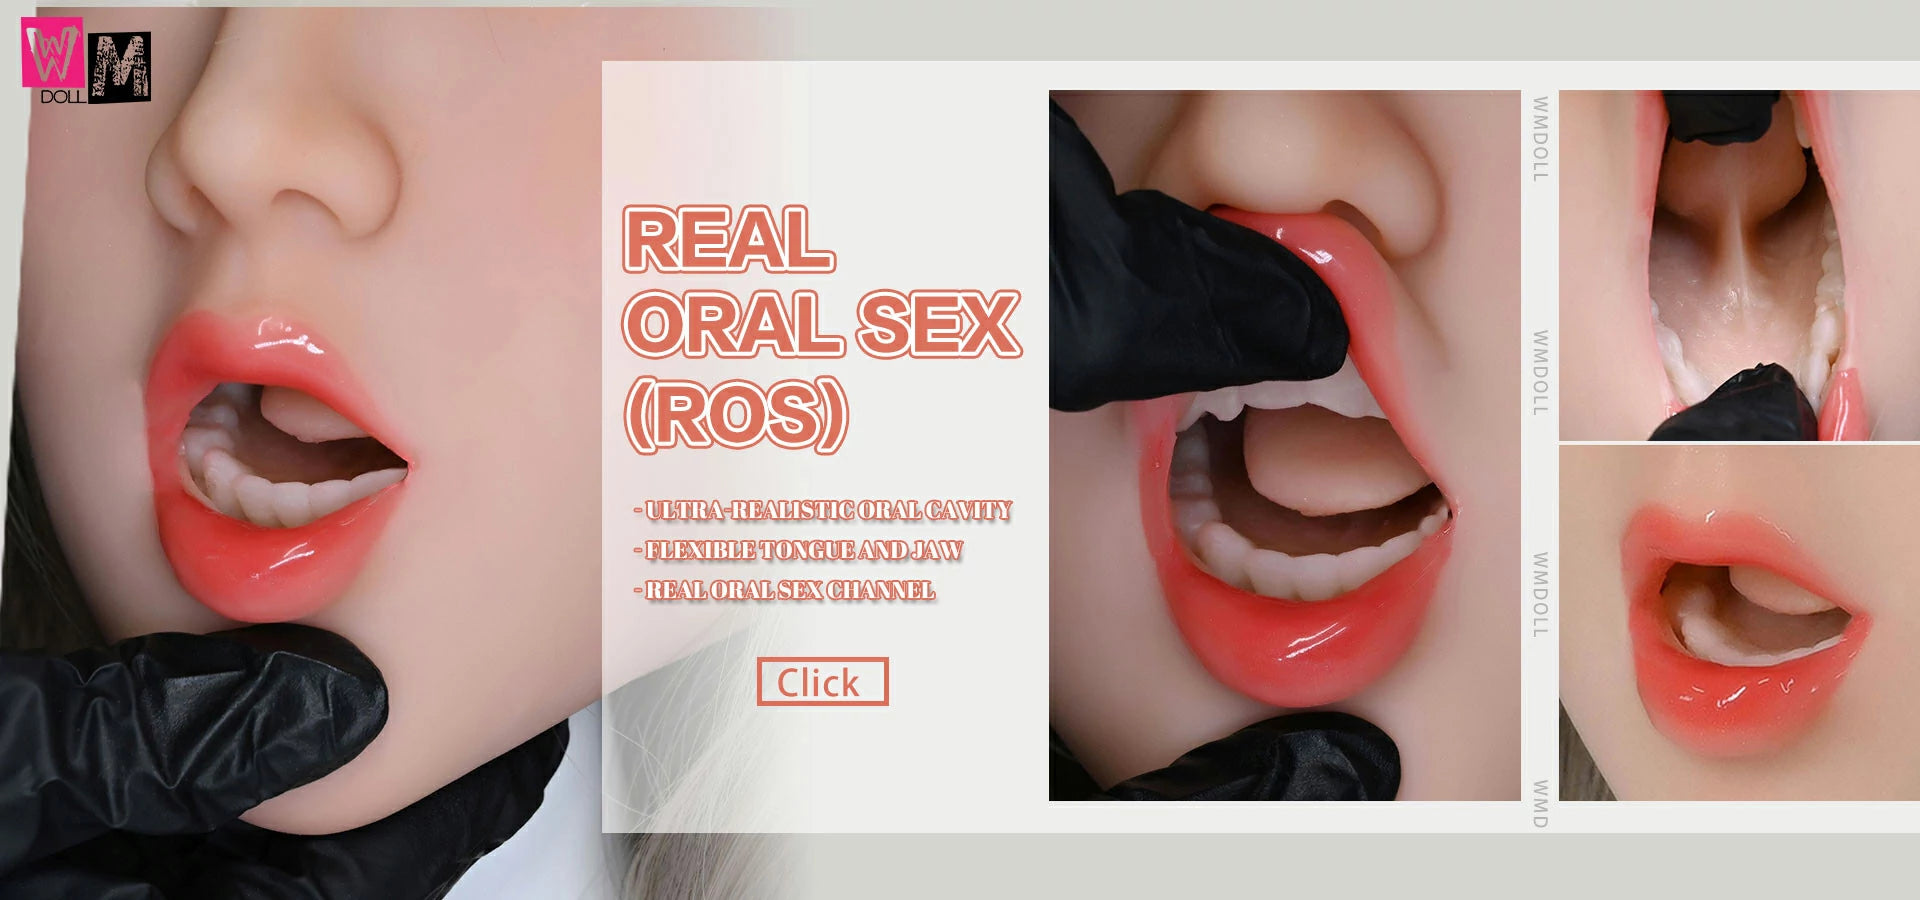 wm dolls real oral sex